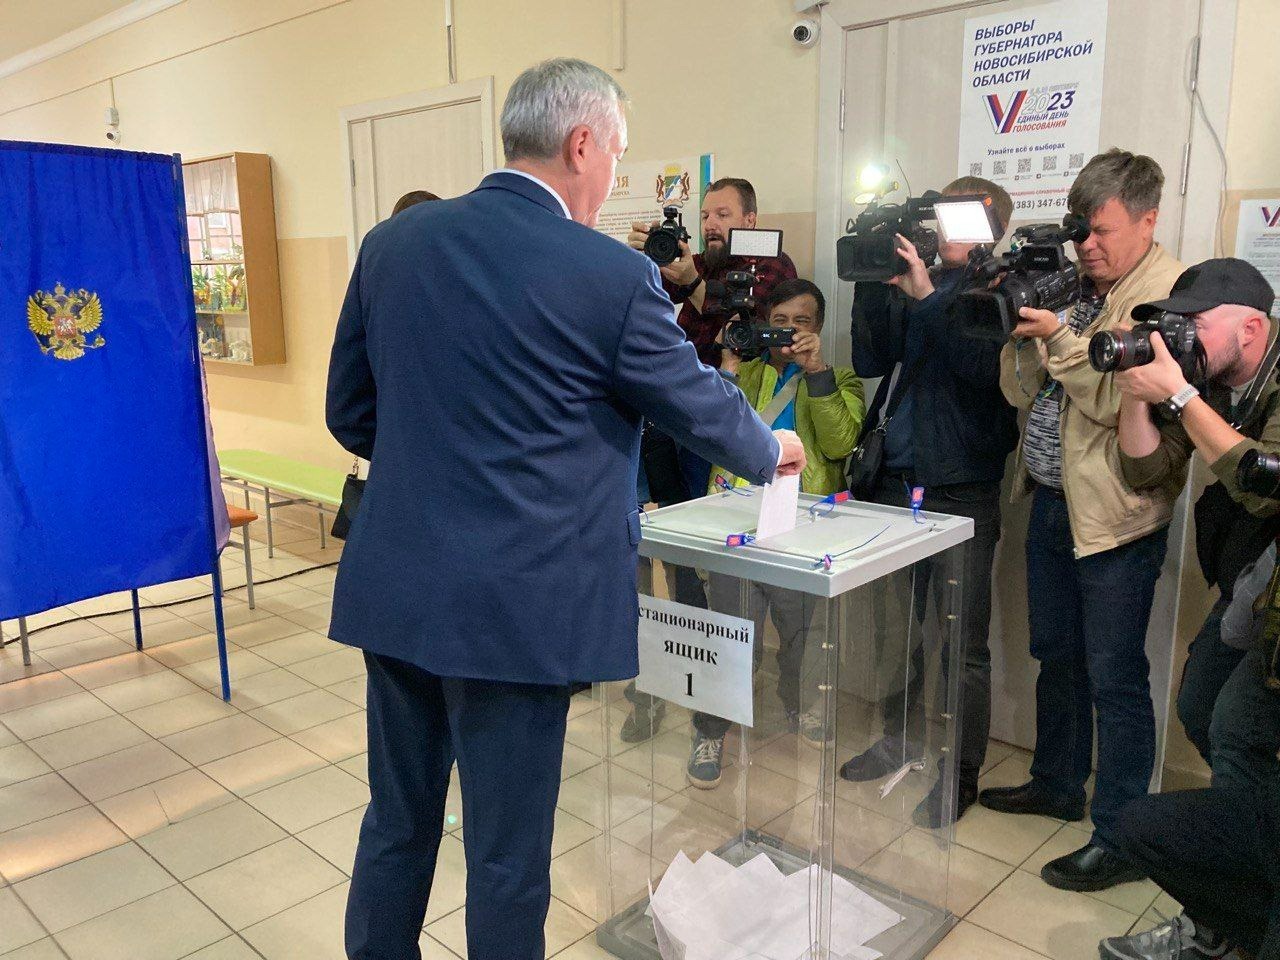 Андрей Травников проголосовал за одного из кандидатов